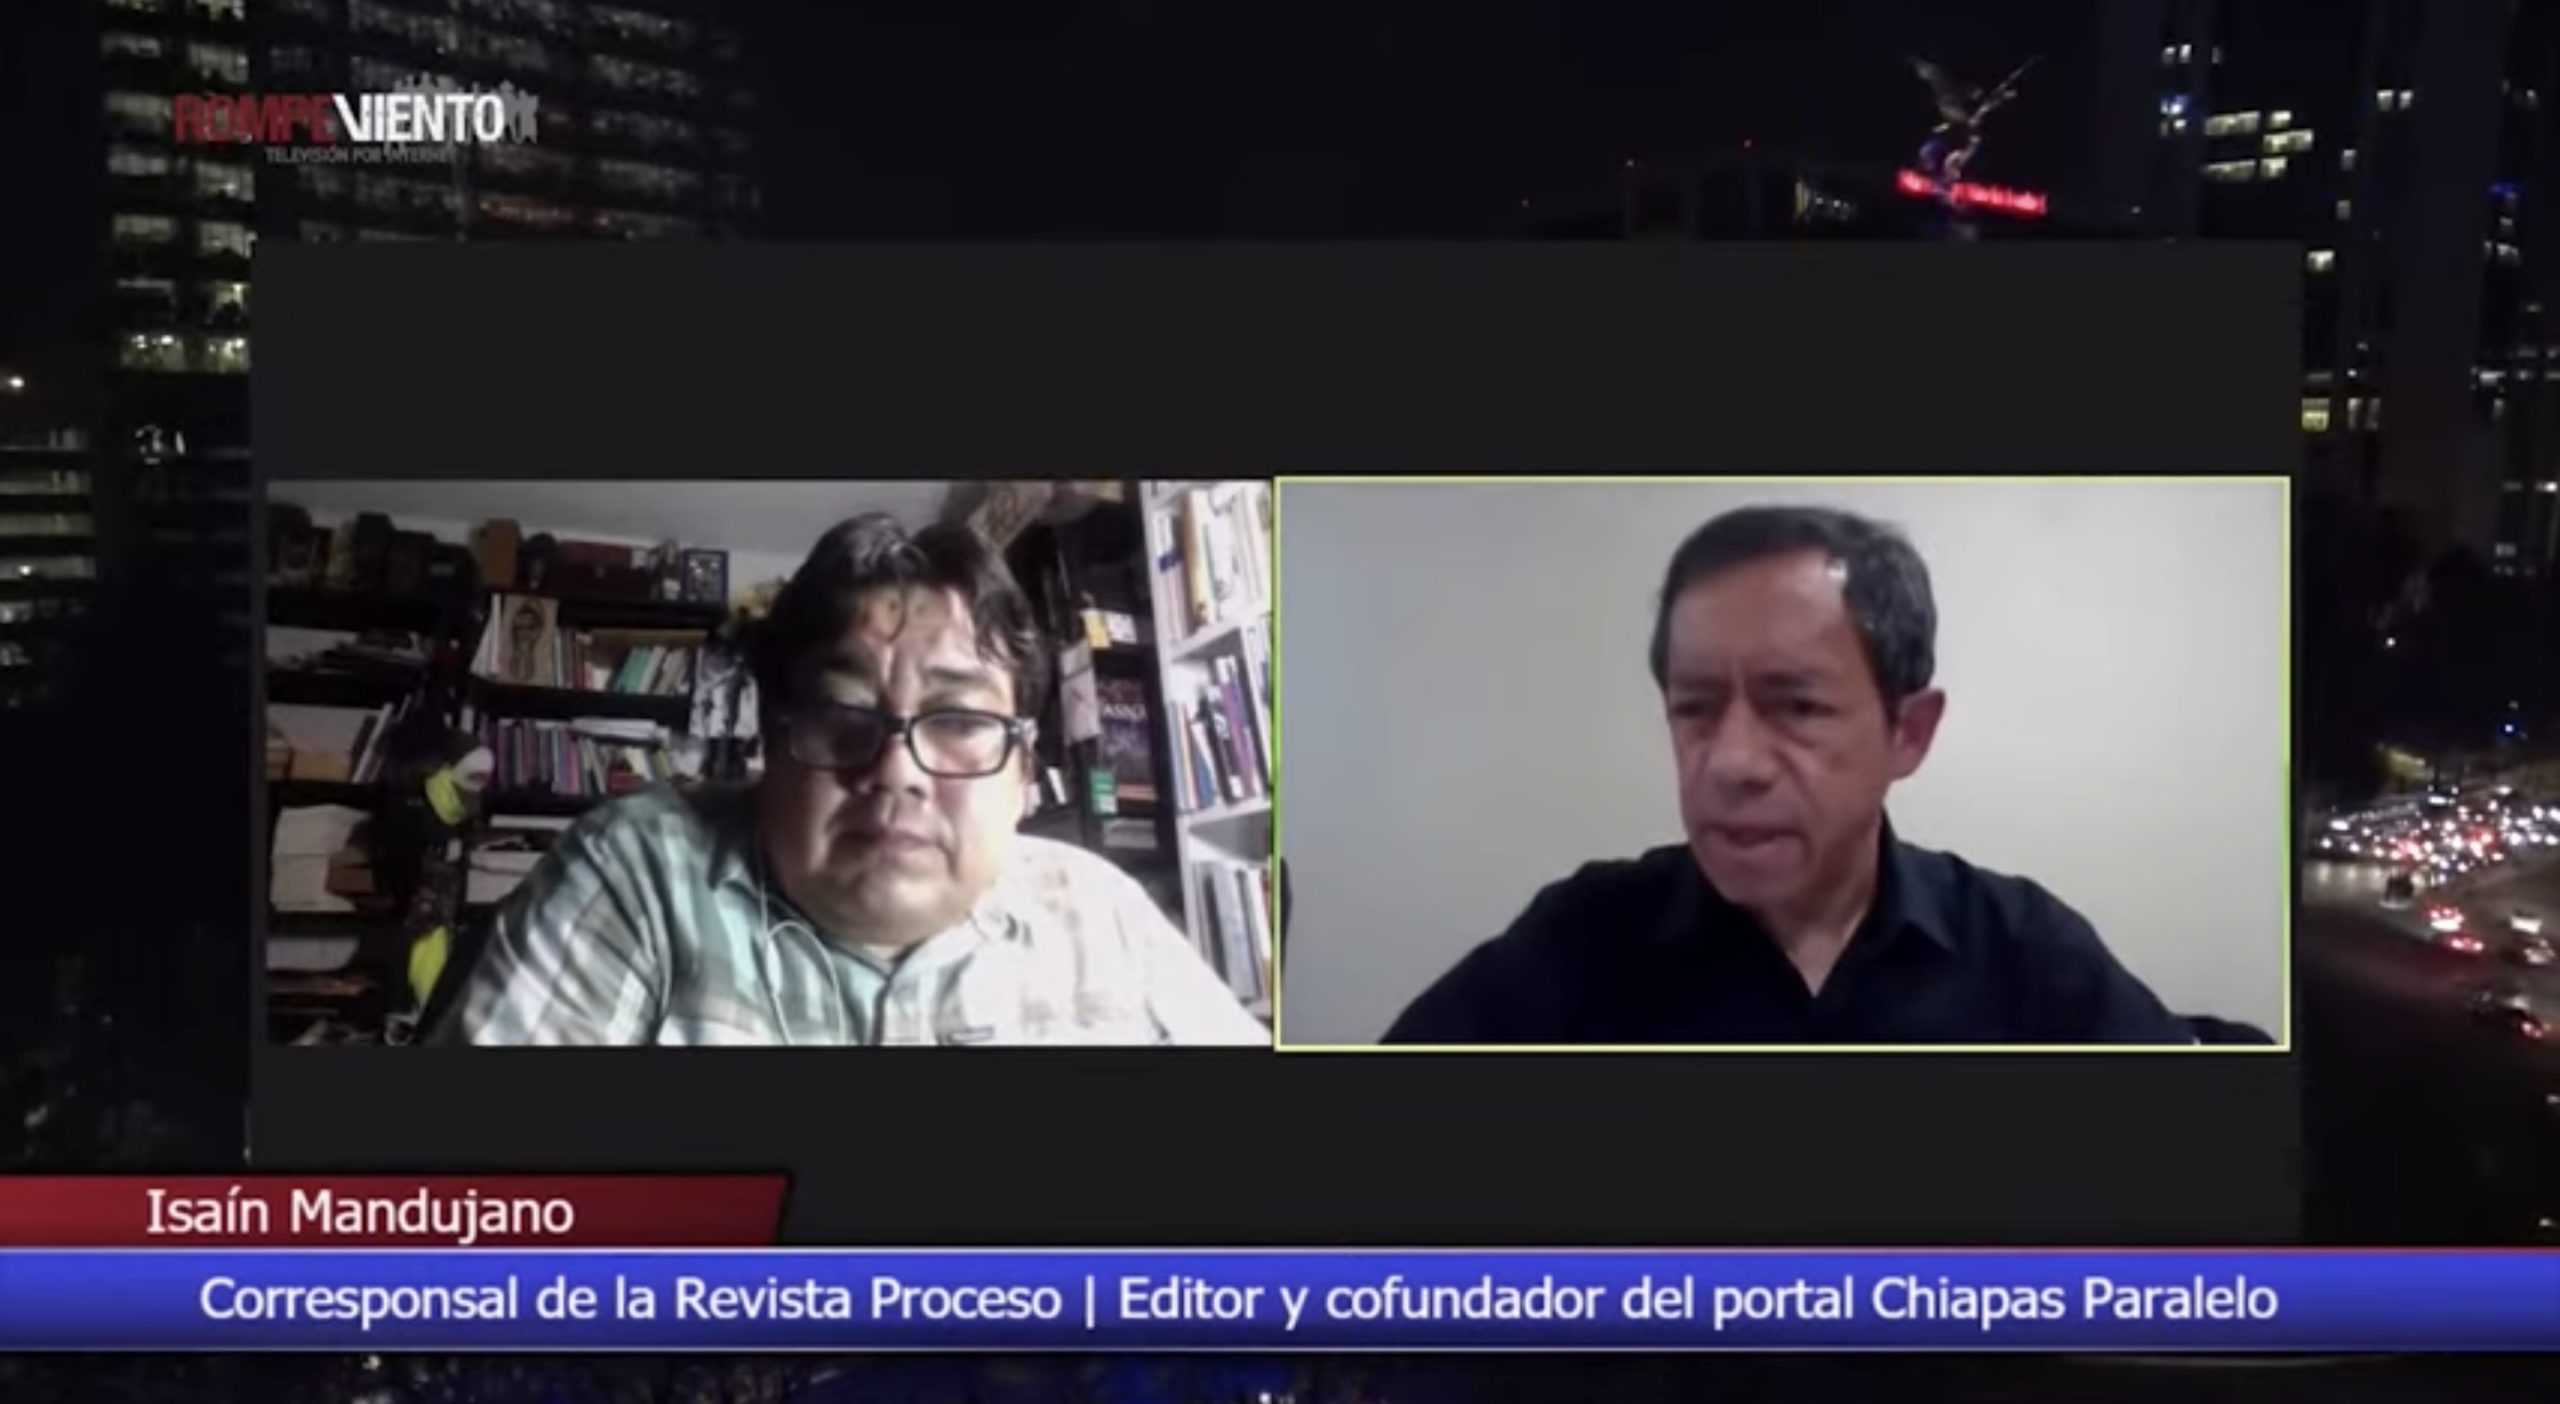 Chiapas al borde de la guerra civil - Mirada Crítica